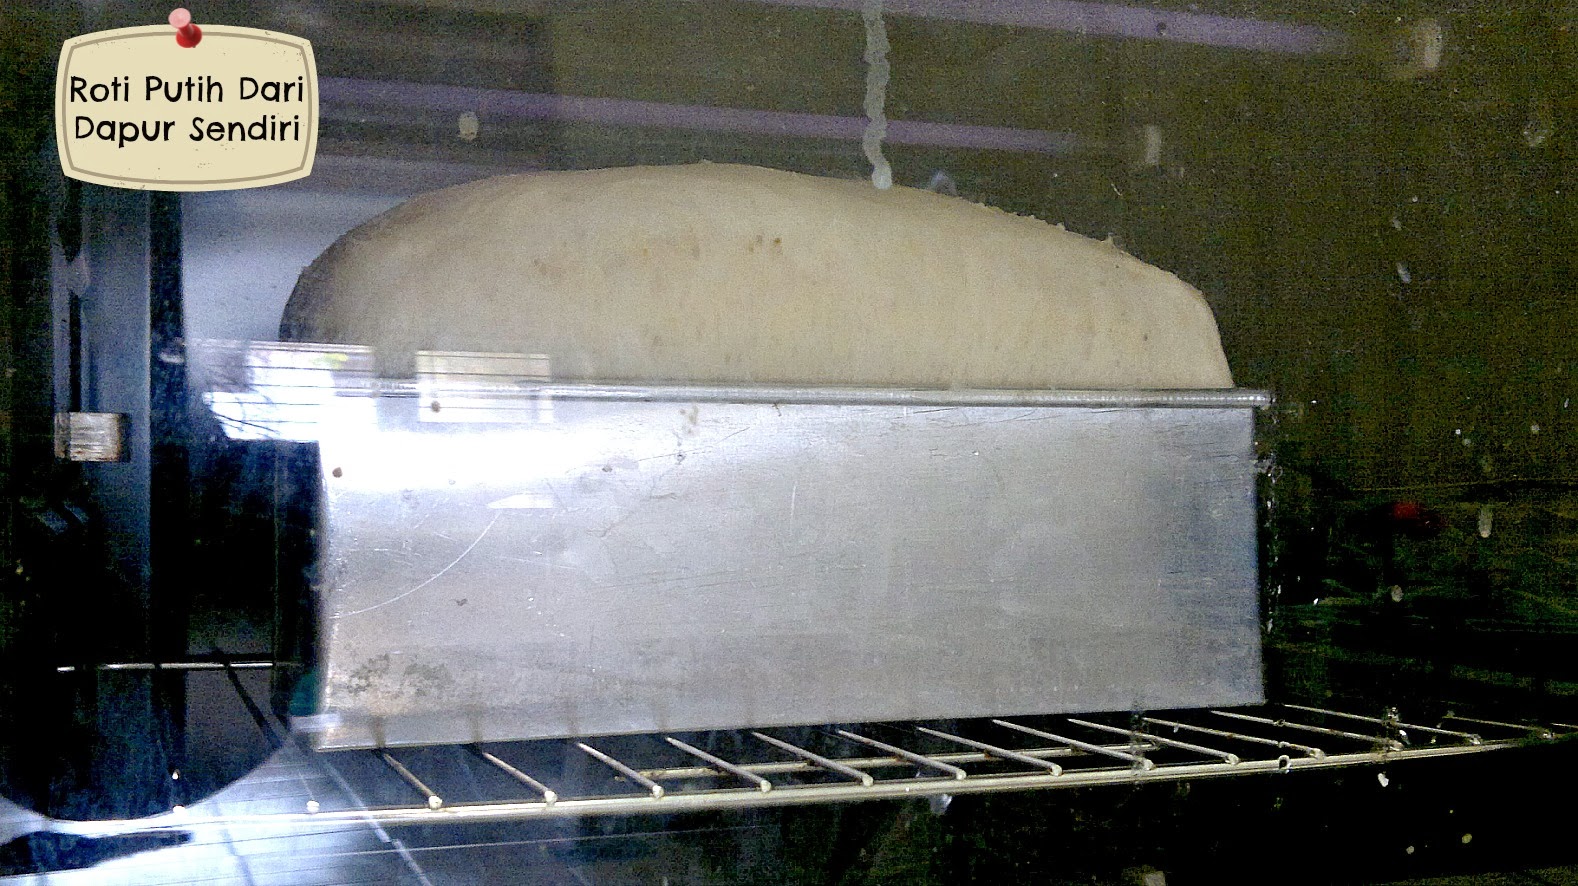 Kebun sejemput: Roti Putih Dari Dapur Sendiri